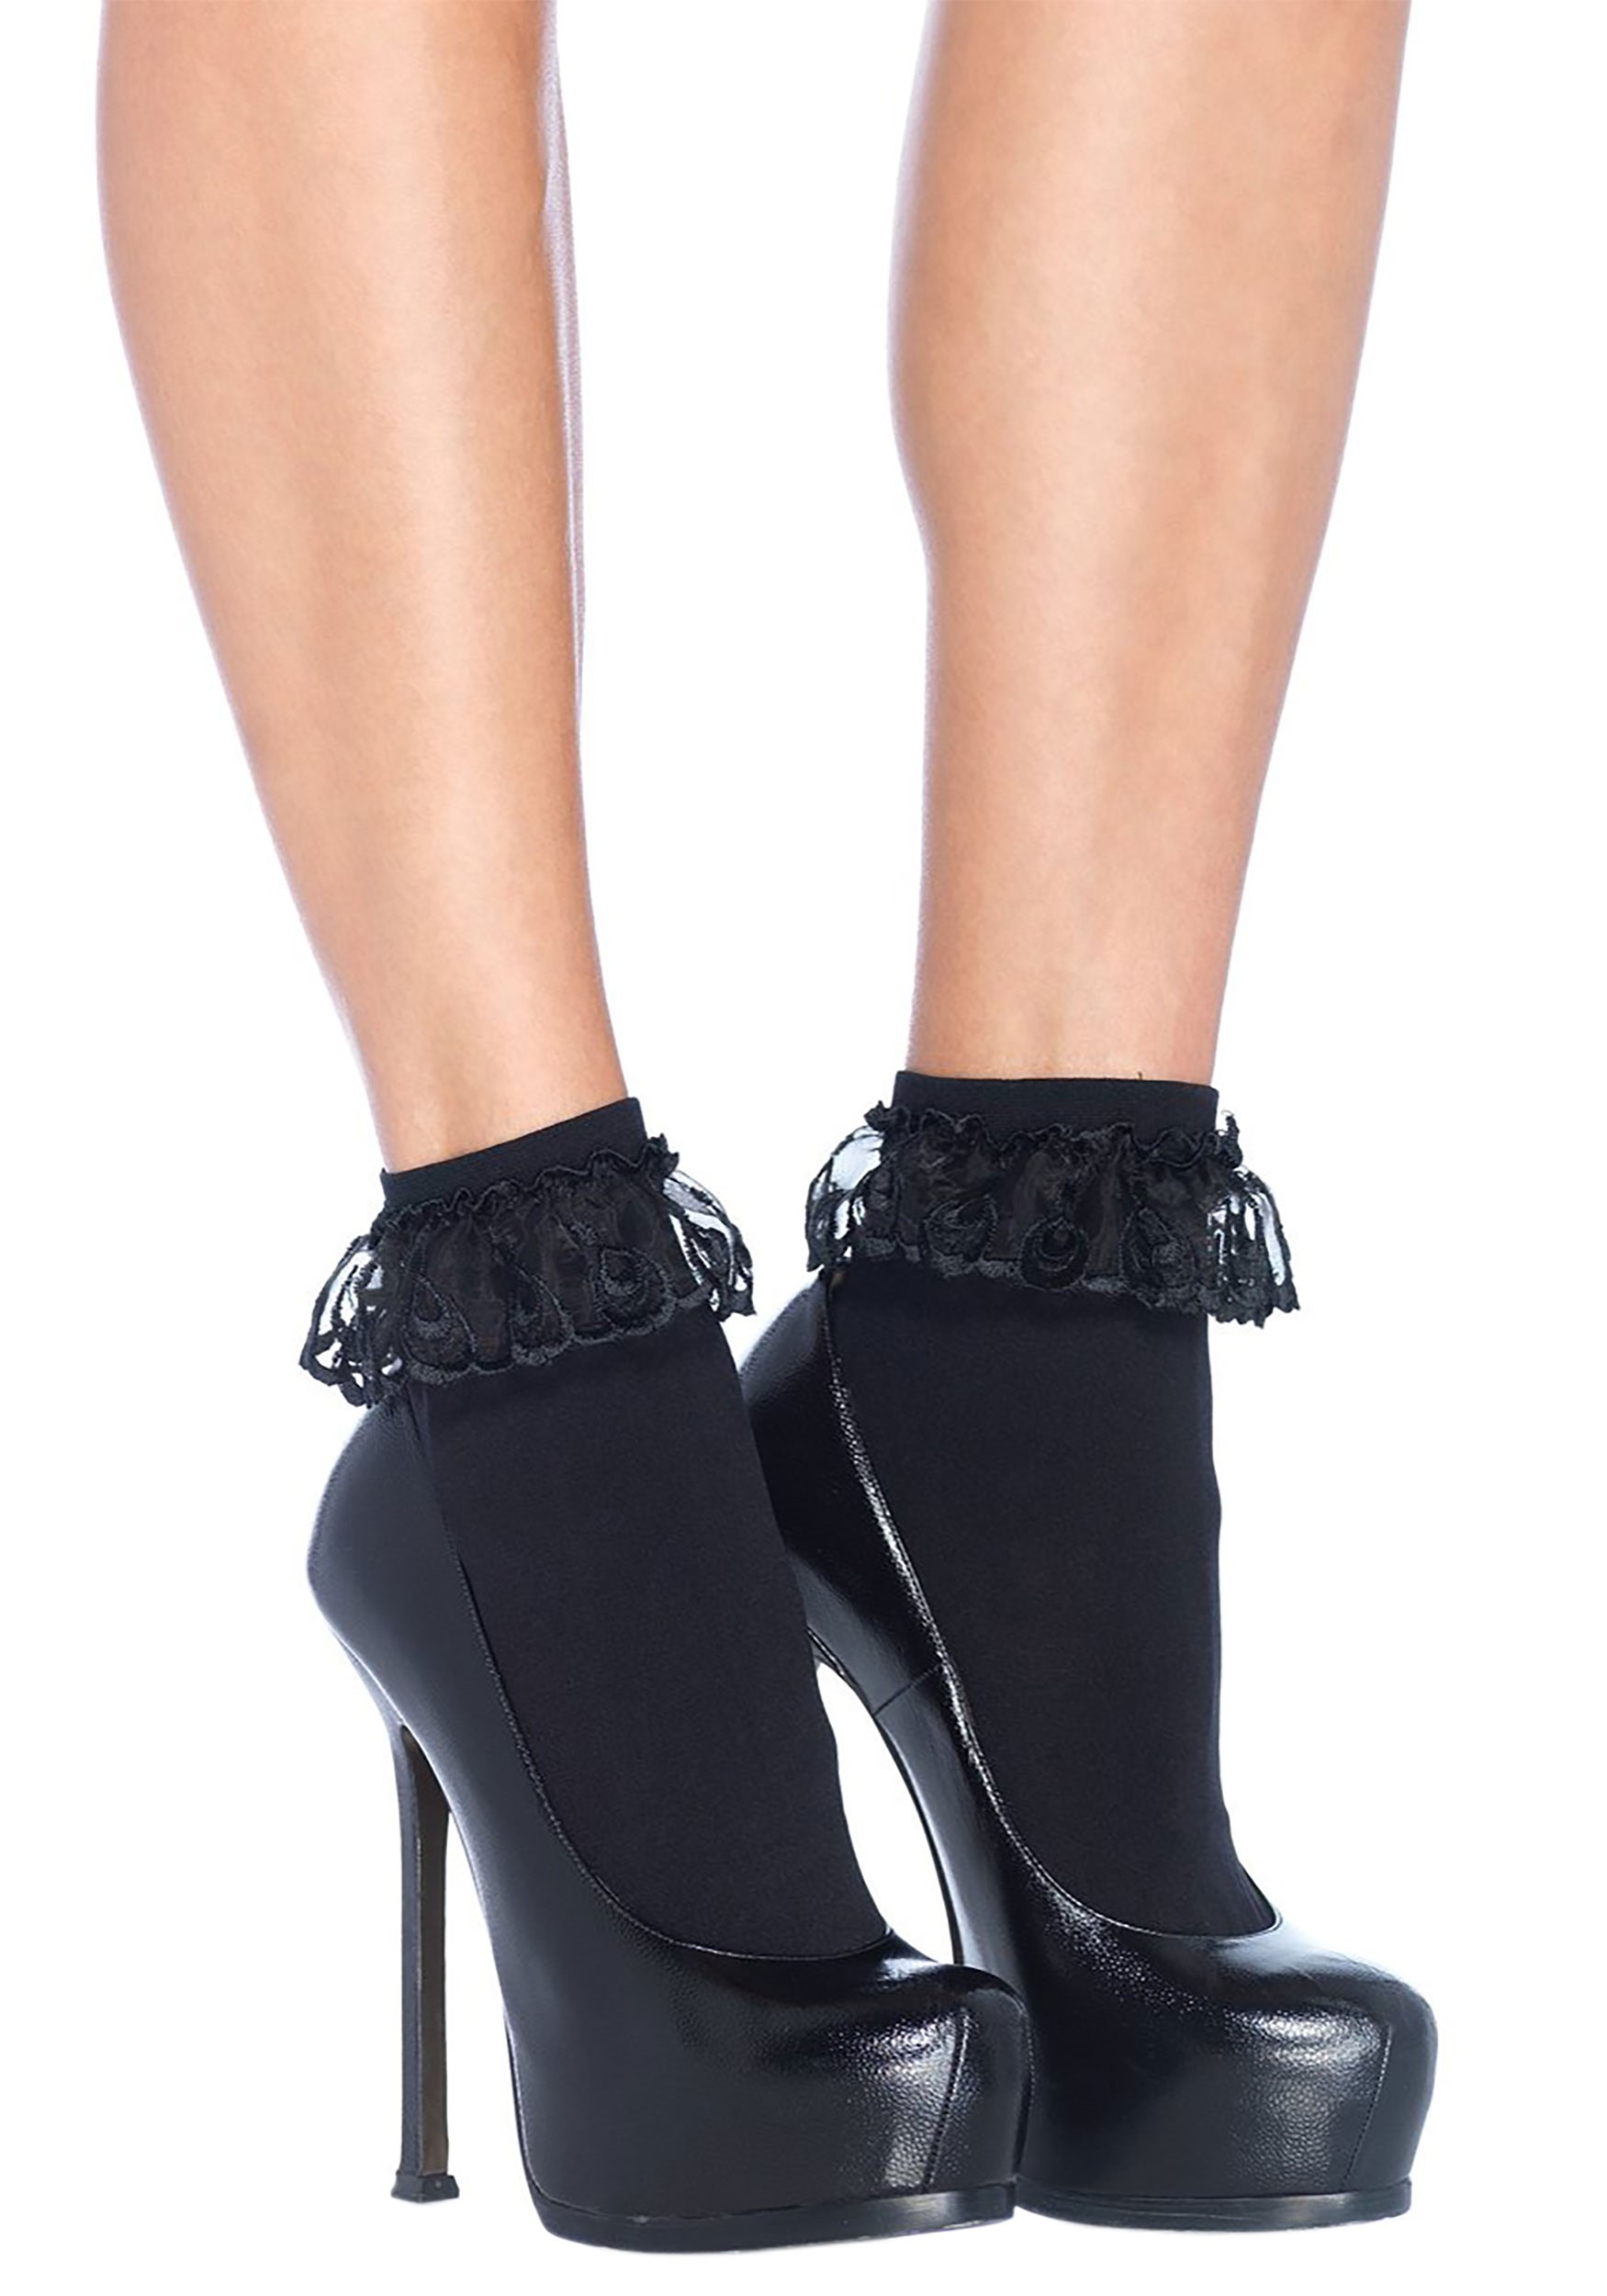 Black Lace Ruffle Ankle Women's Socks